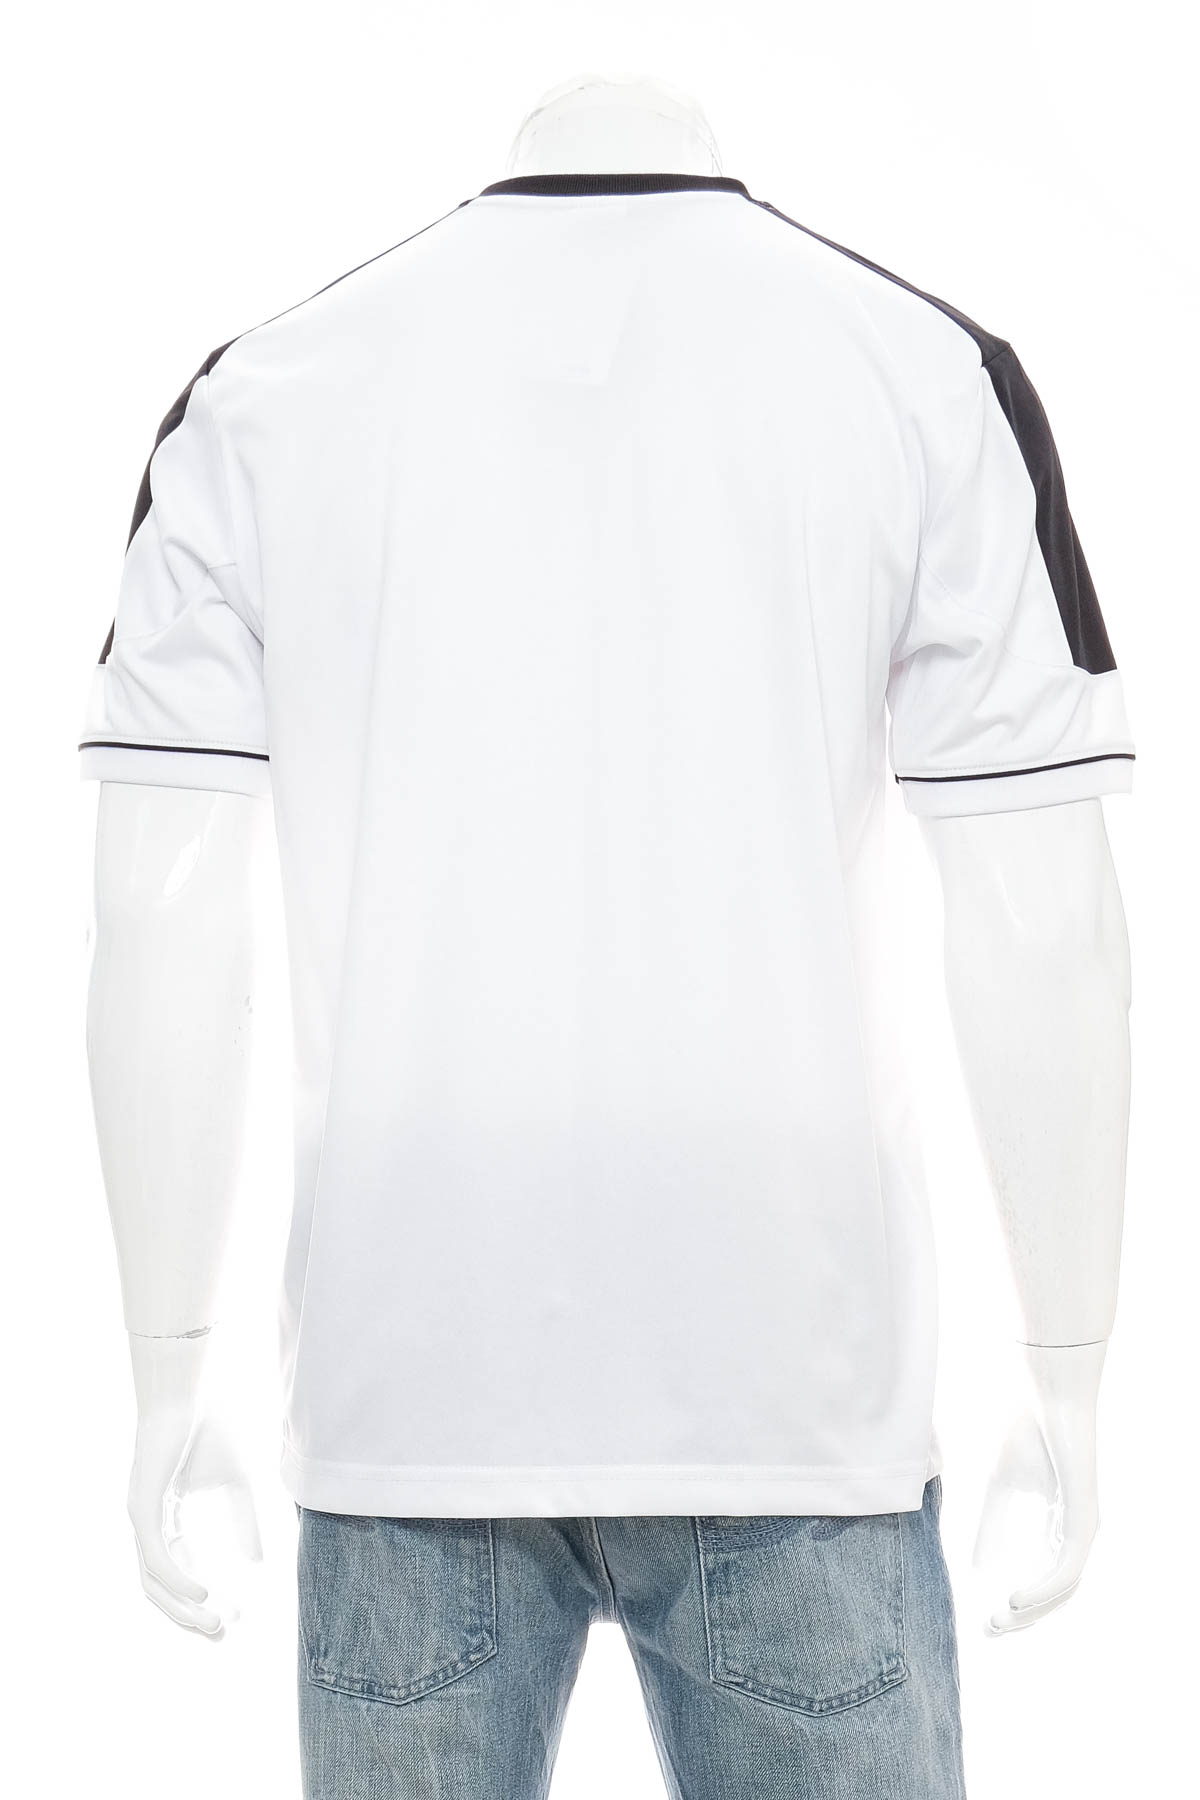 Tricou pentru bărbați - Deutscher Fussball-Bund - 1